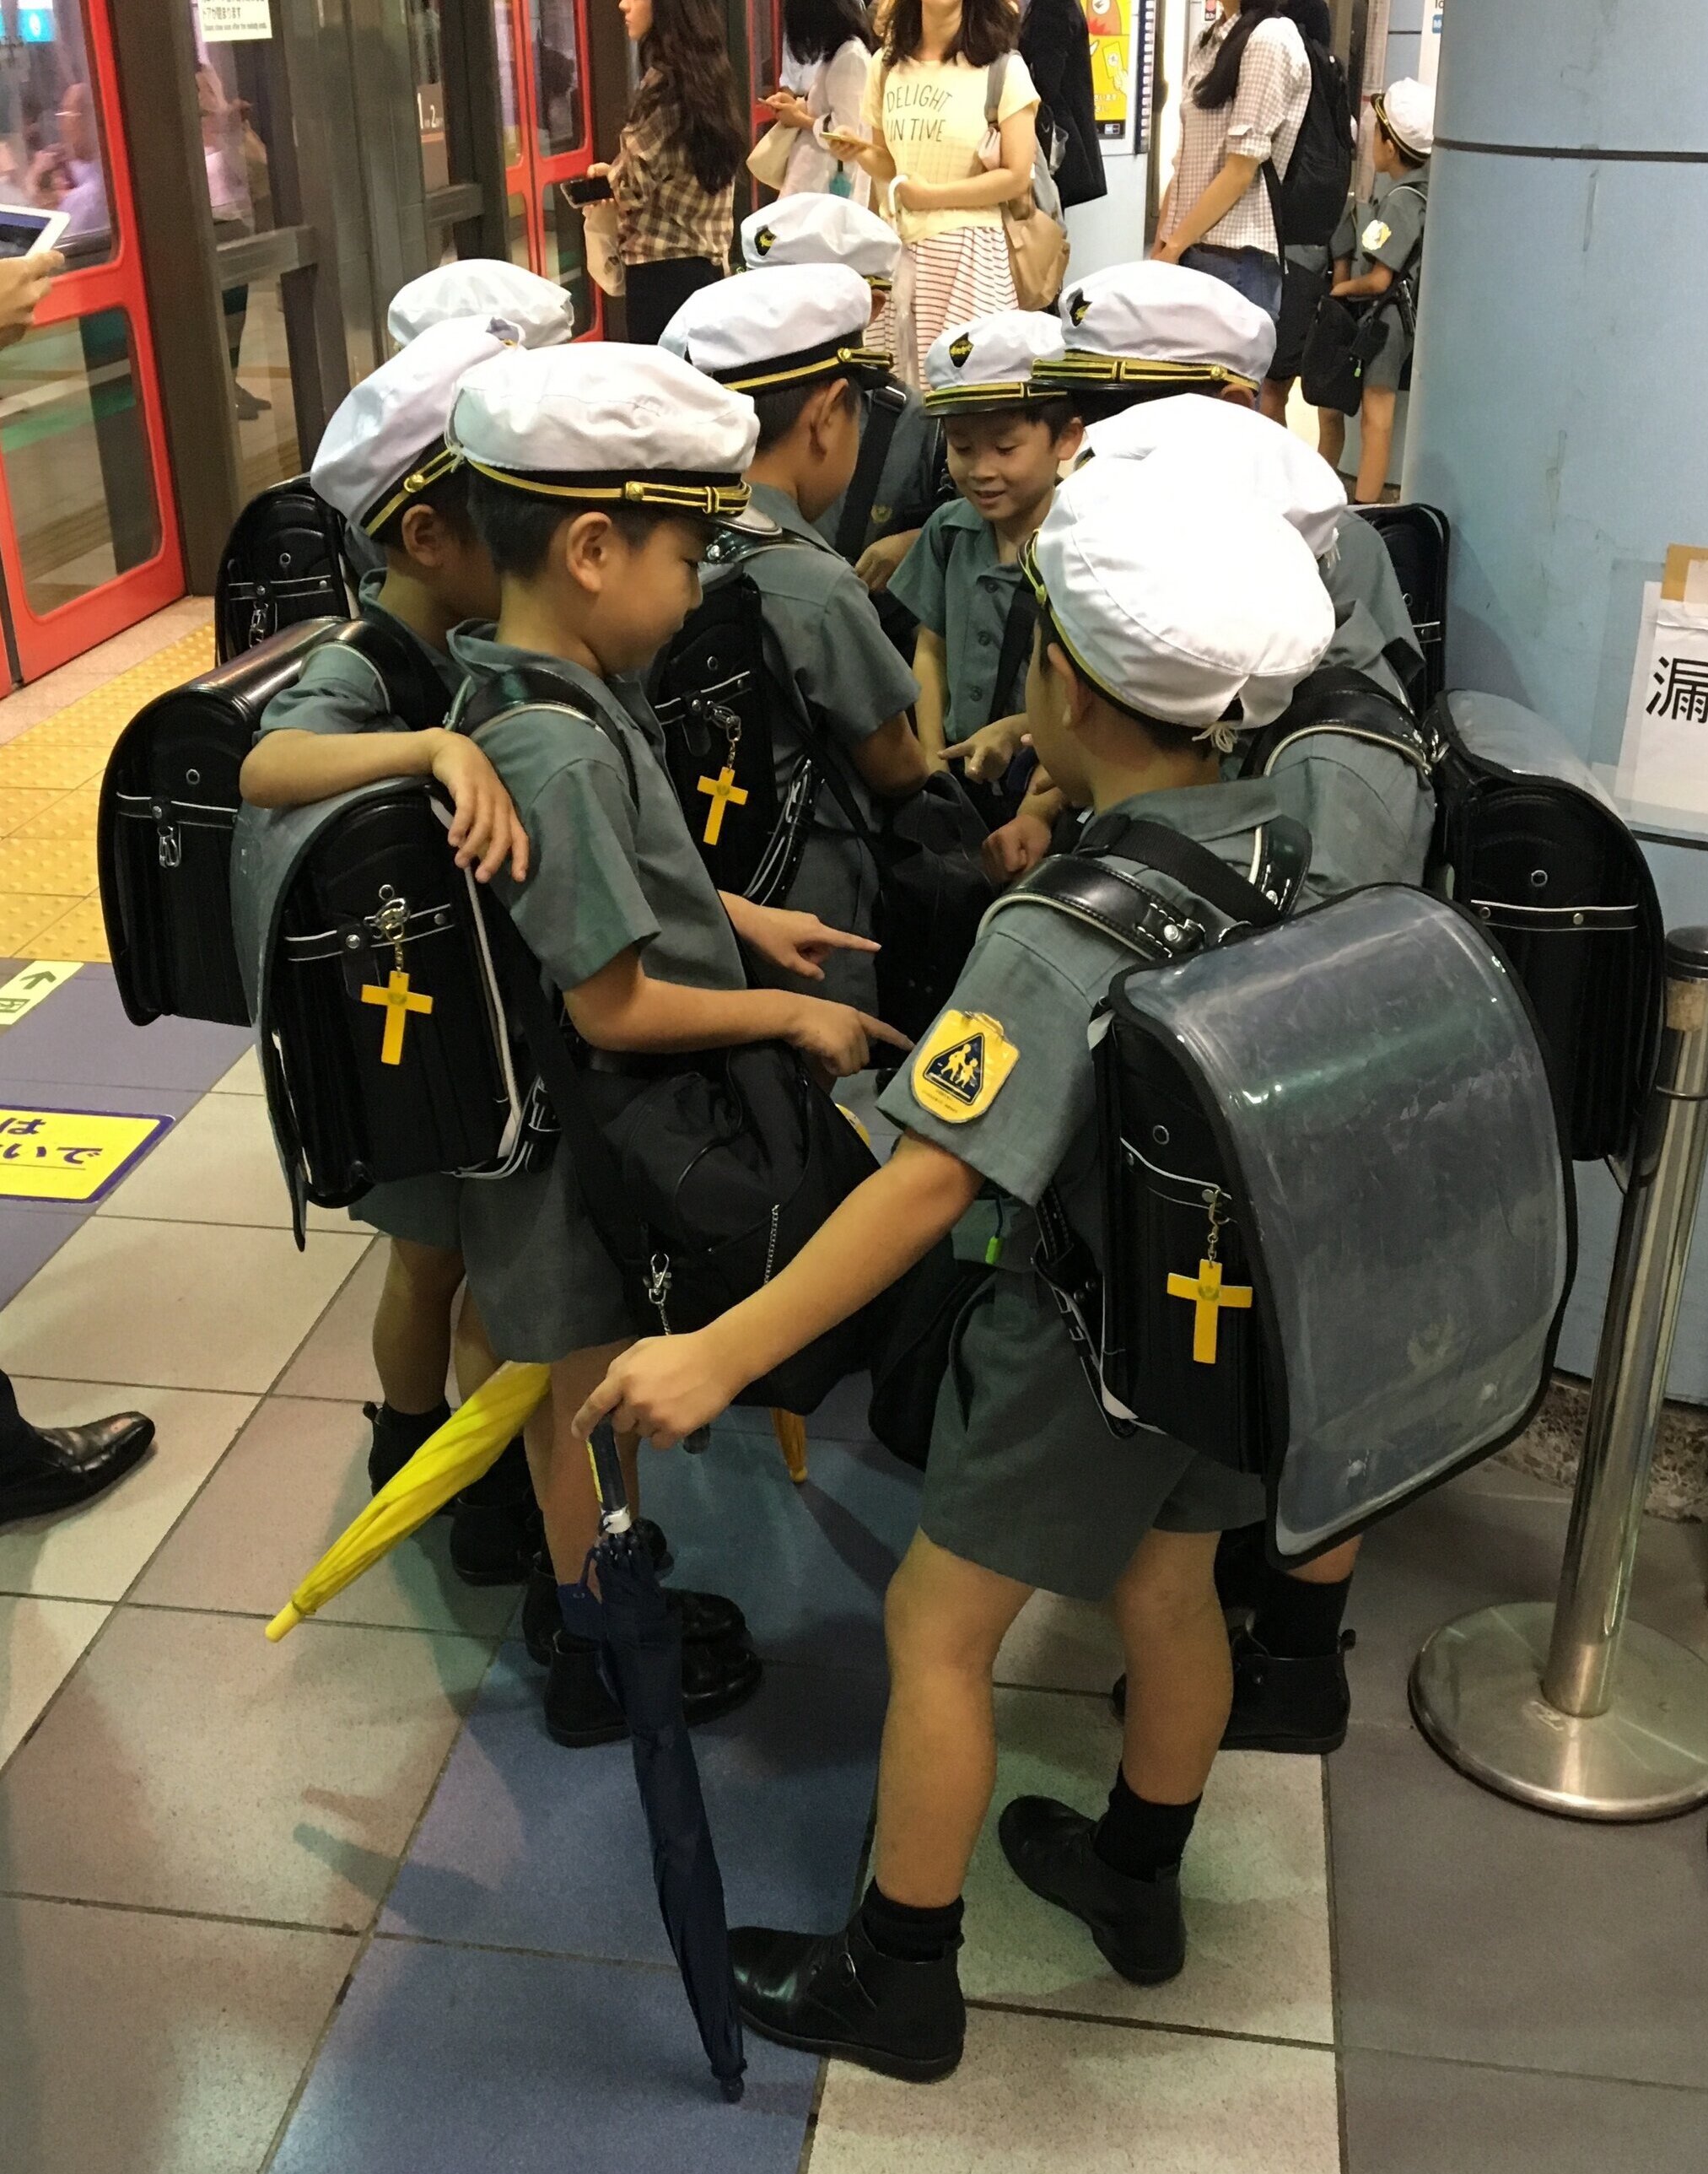 kids in school uniform, Tokyo subway